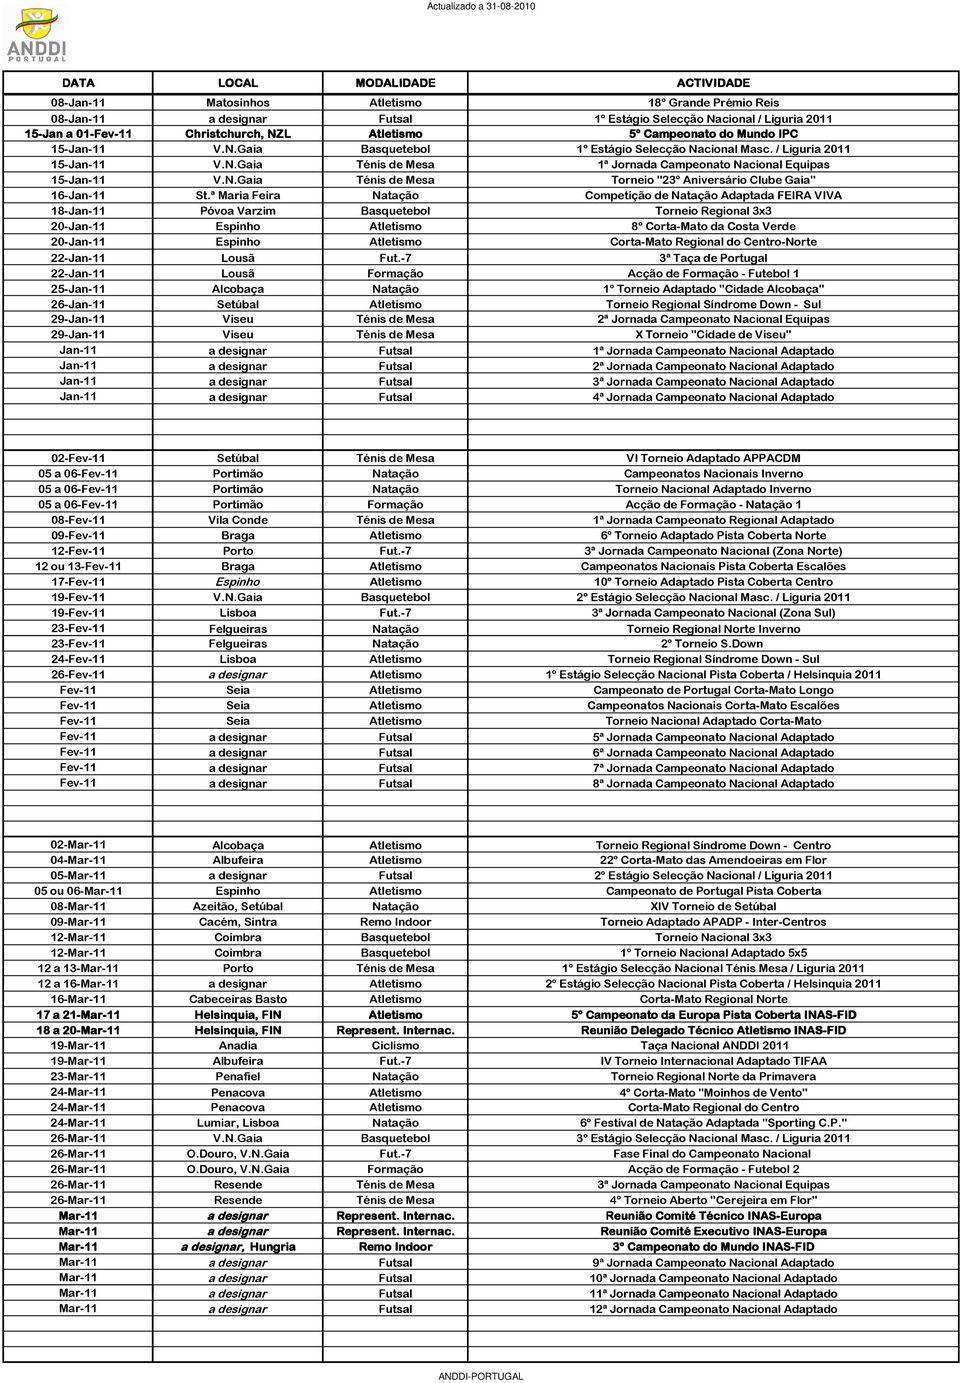 ª Maria Feira Competição de Adaptada FEIRA VIVA 18-Jan-11 Póvoa Varzim Basquetebol Torneio Regional 3x3 20-Jan-11 Espinho 8º Corta-Mato da Costa Verde 20-Jan-11 Espinho Corta-Mato Regional do